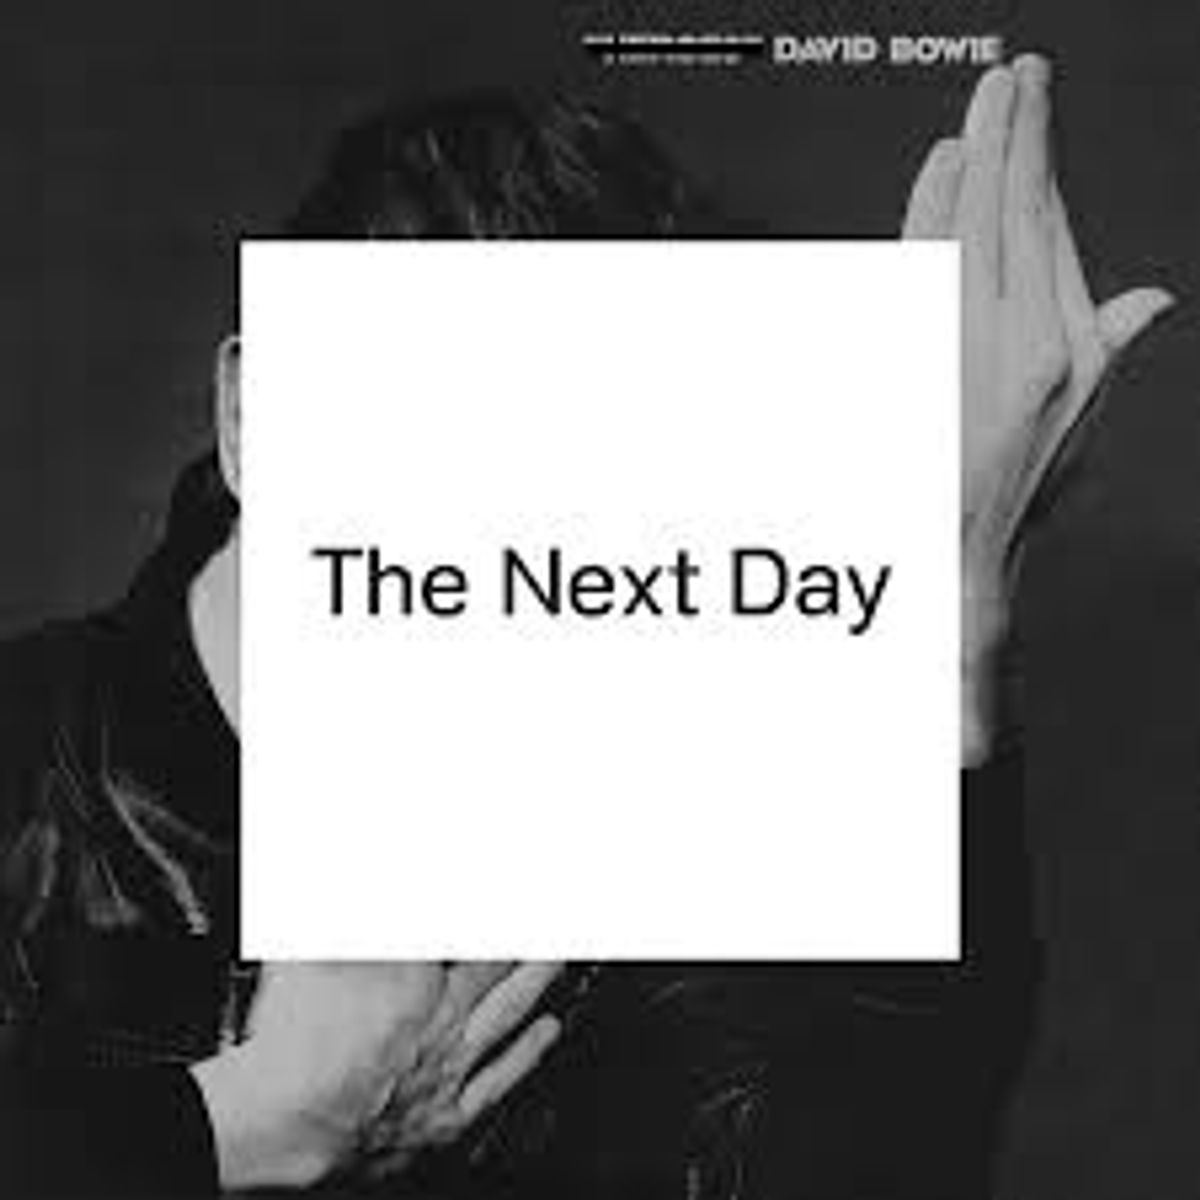 Eeuwige stilte en de dag erna... Bowie is terug!